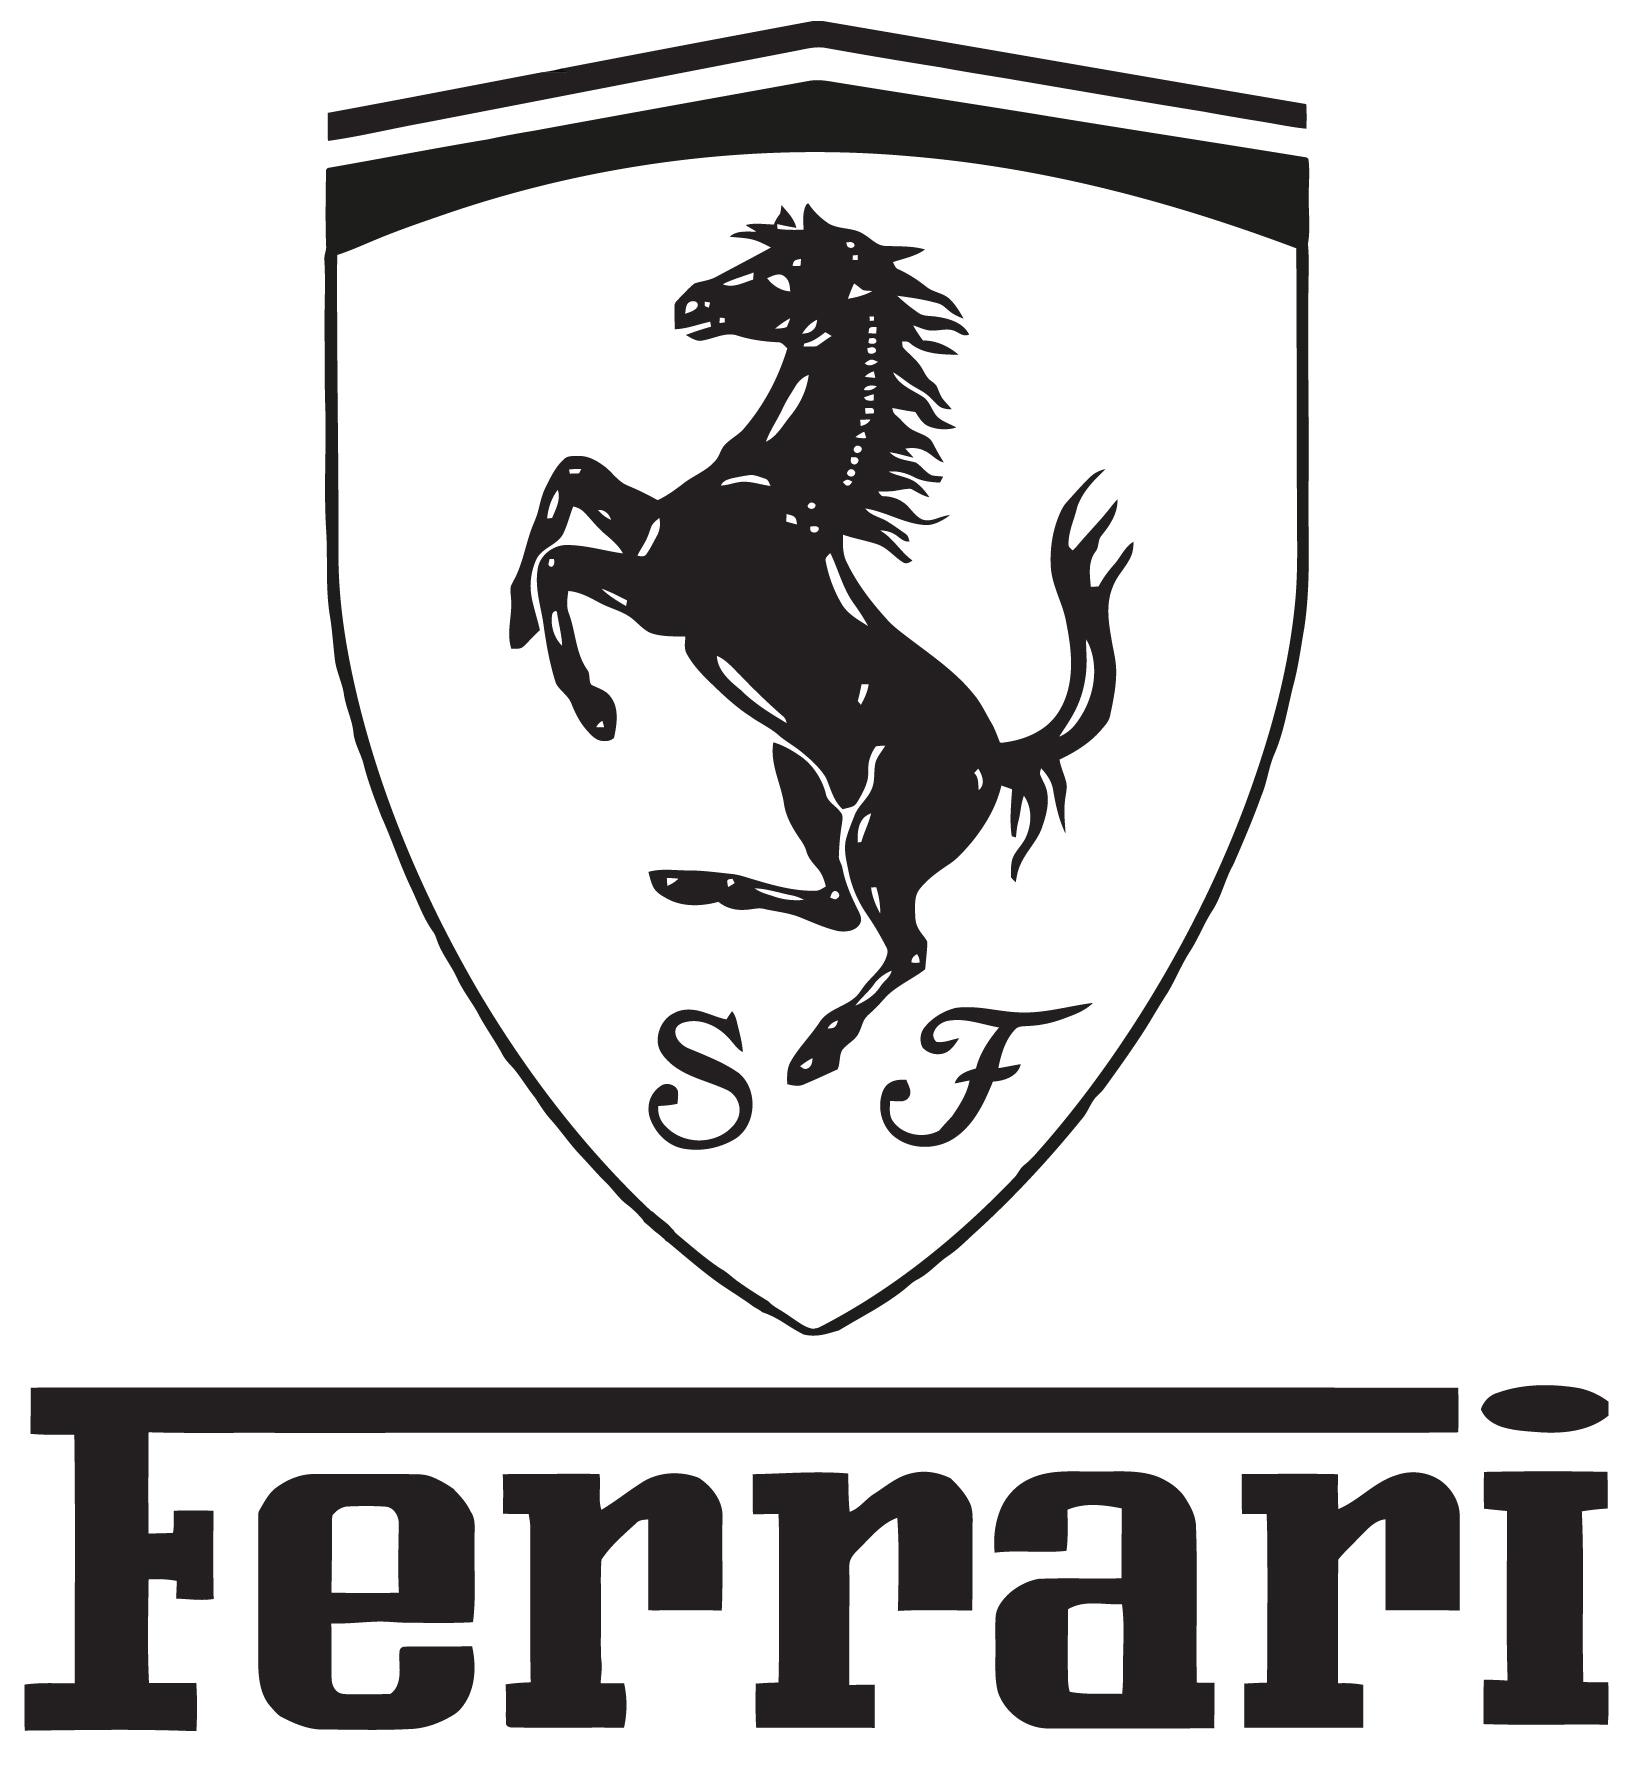 https://wallsticker.us/wp-content/uploads/2019/07/Ferrari-Logo-Wallstiker.-Sticker-preview.jpg